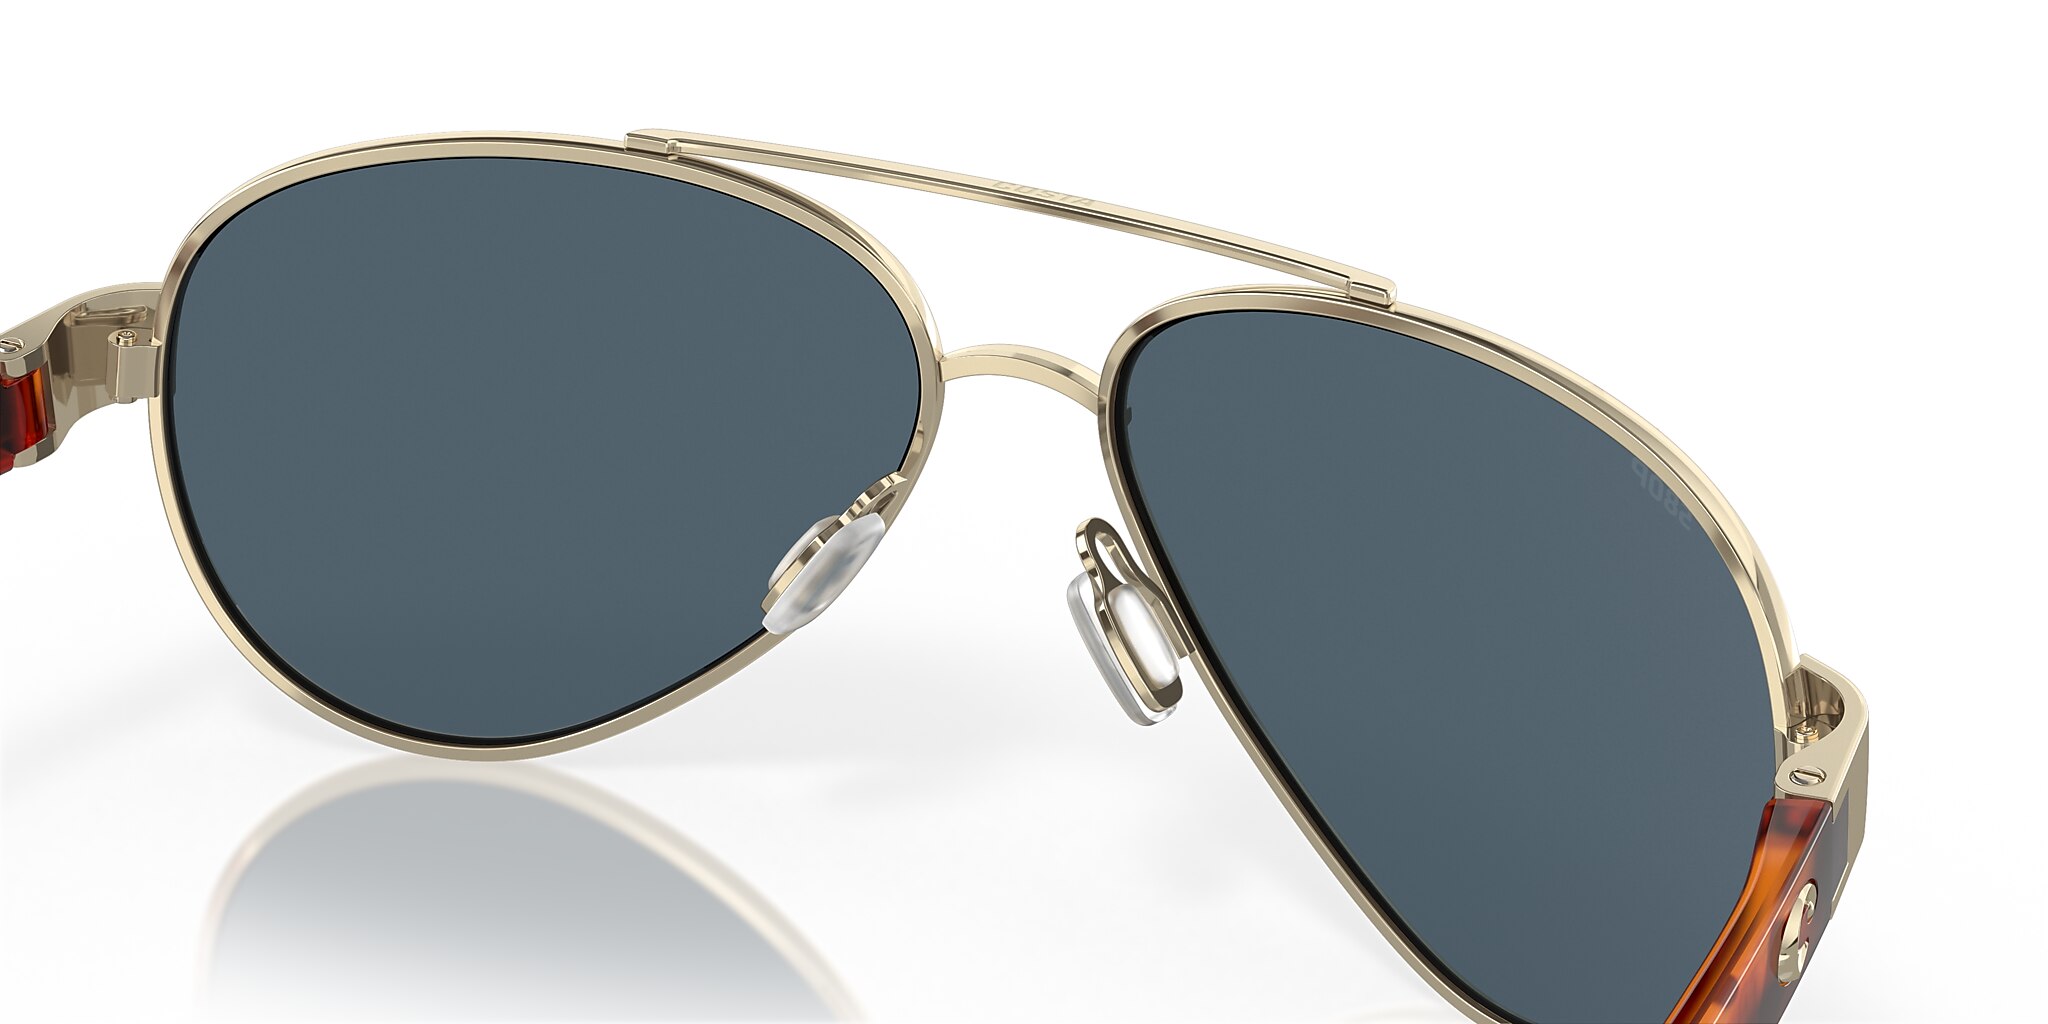 Loreto Polarized Sunglasses in Gray | Costa Del Mar®